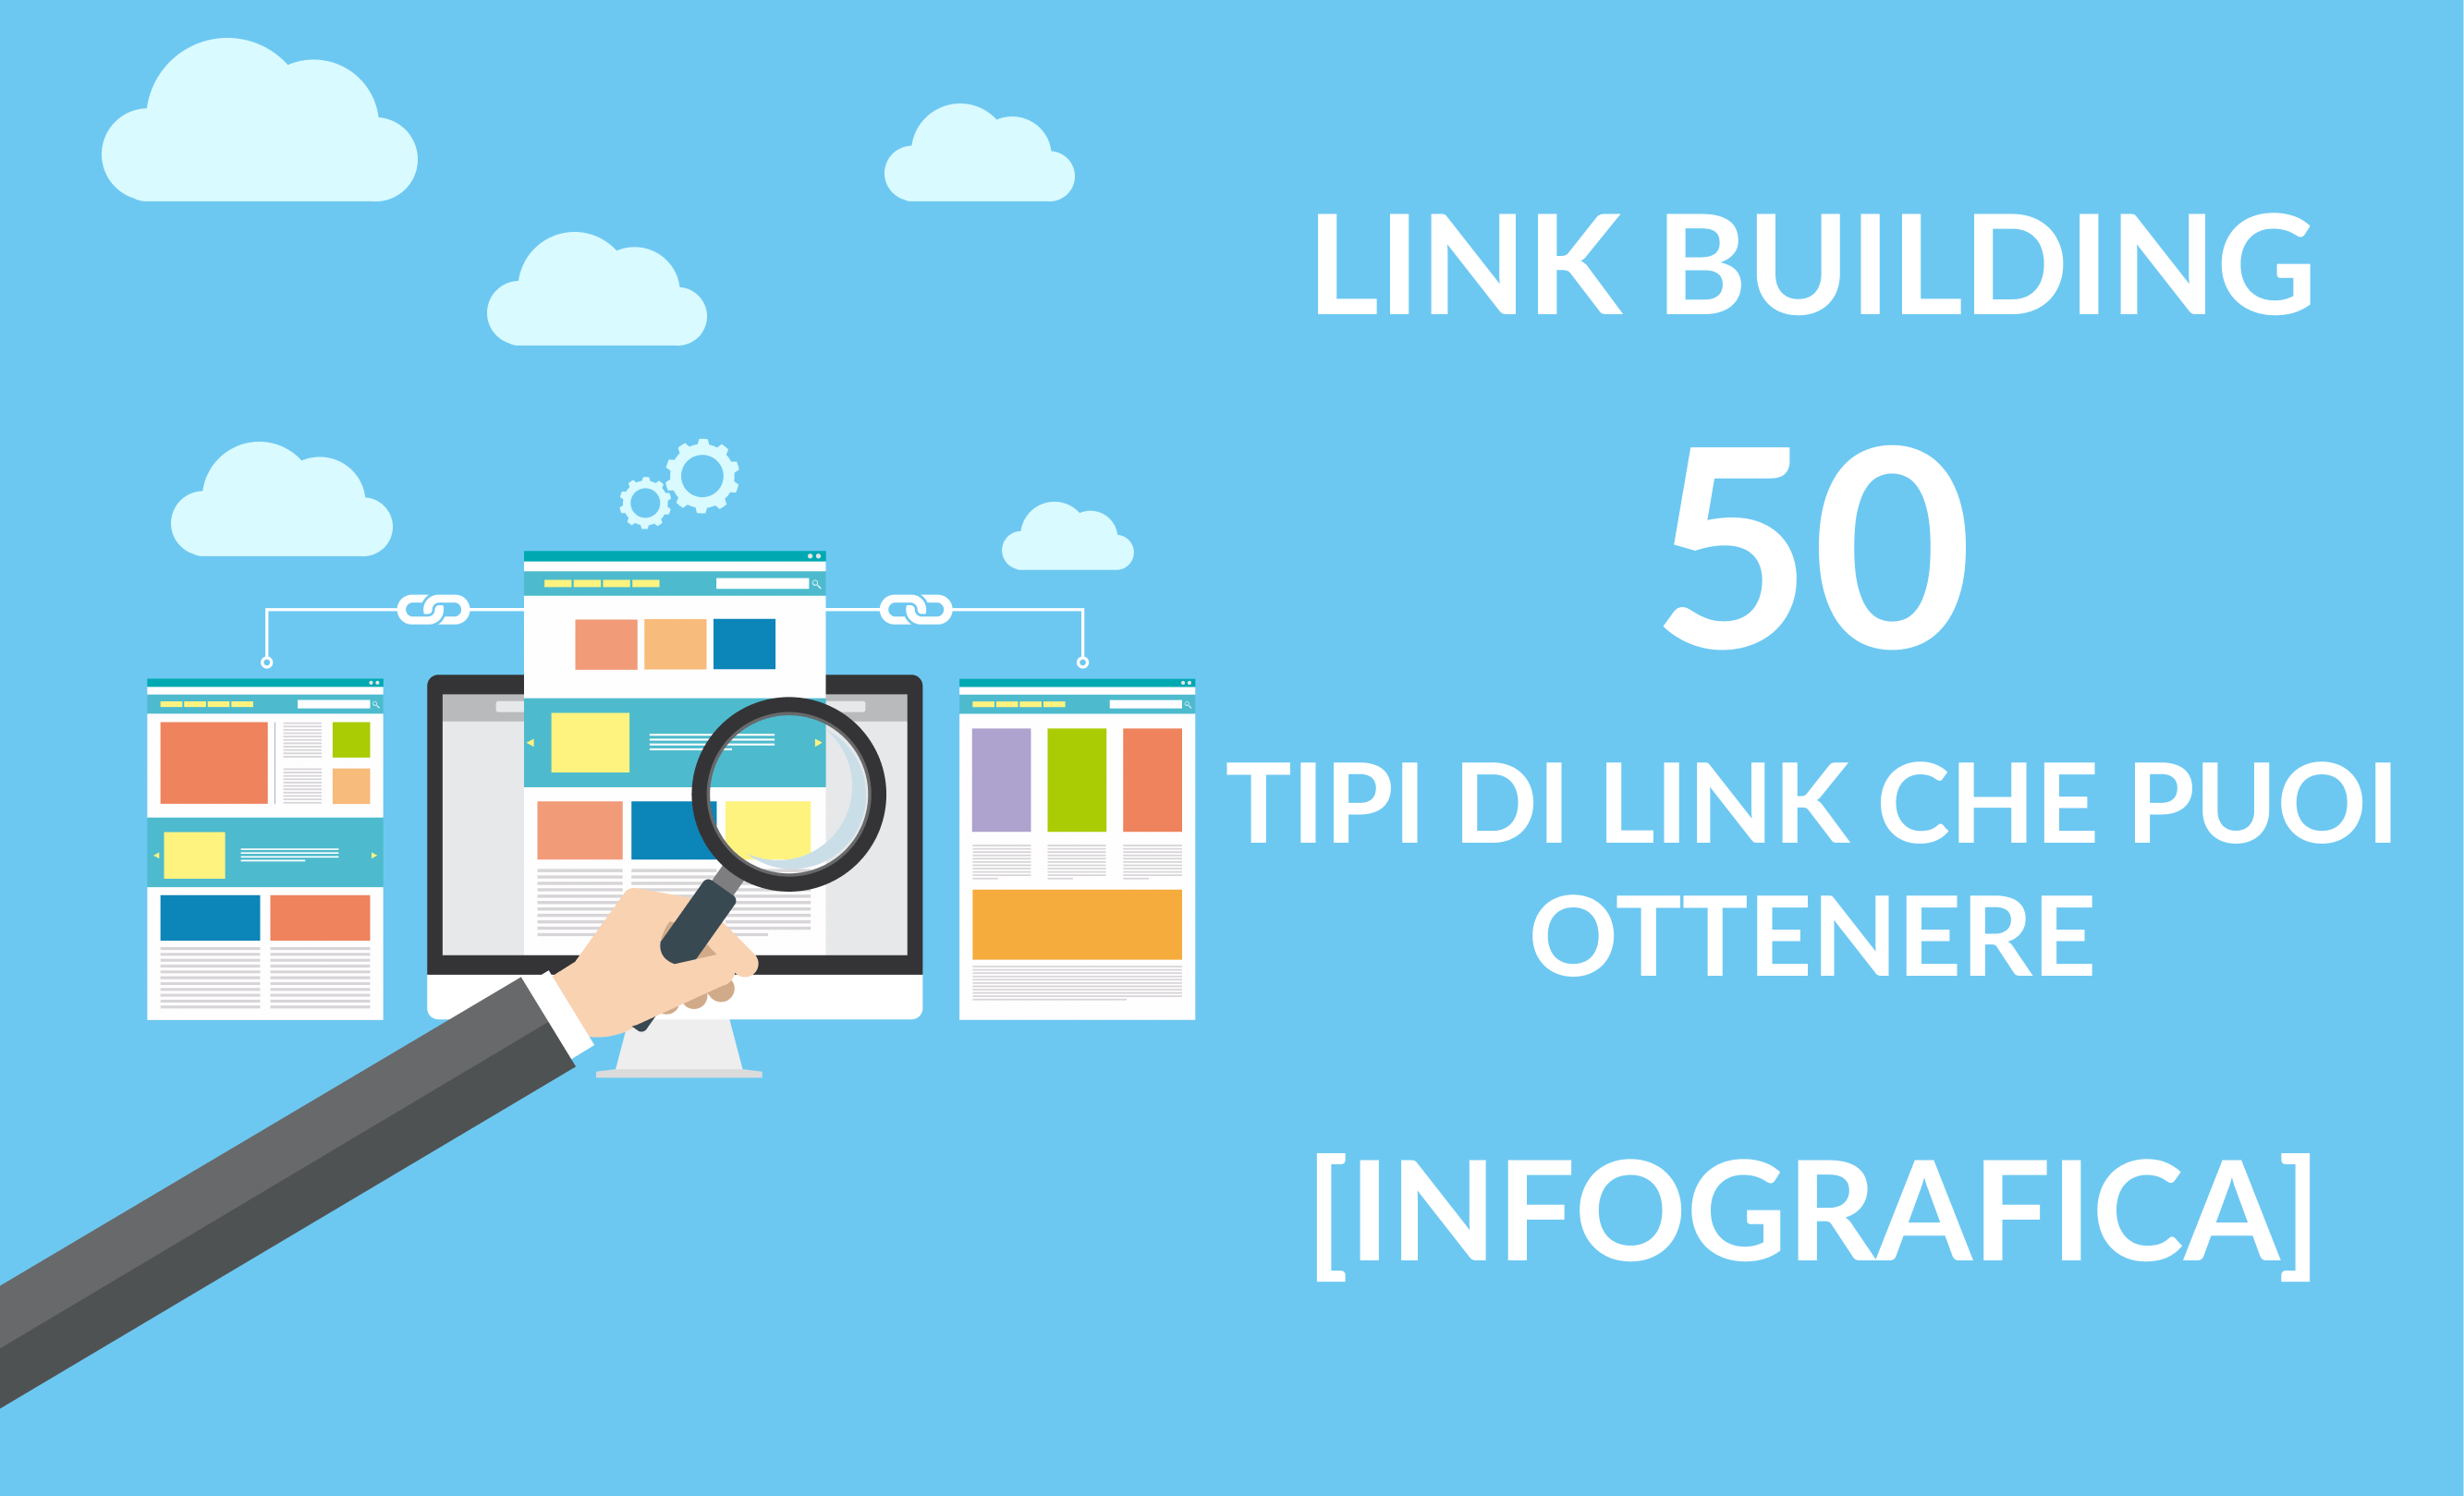 Link Building - 50 tipi di link che puoi ottenere